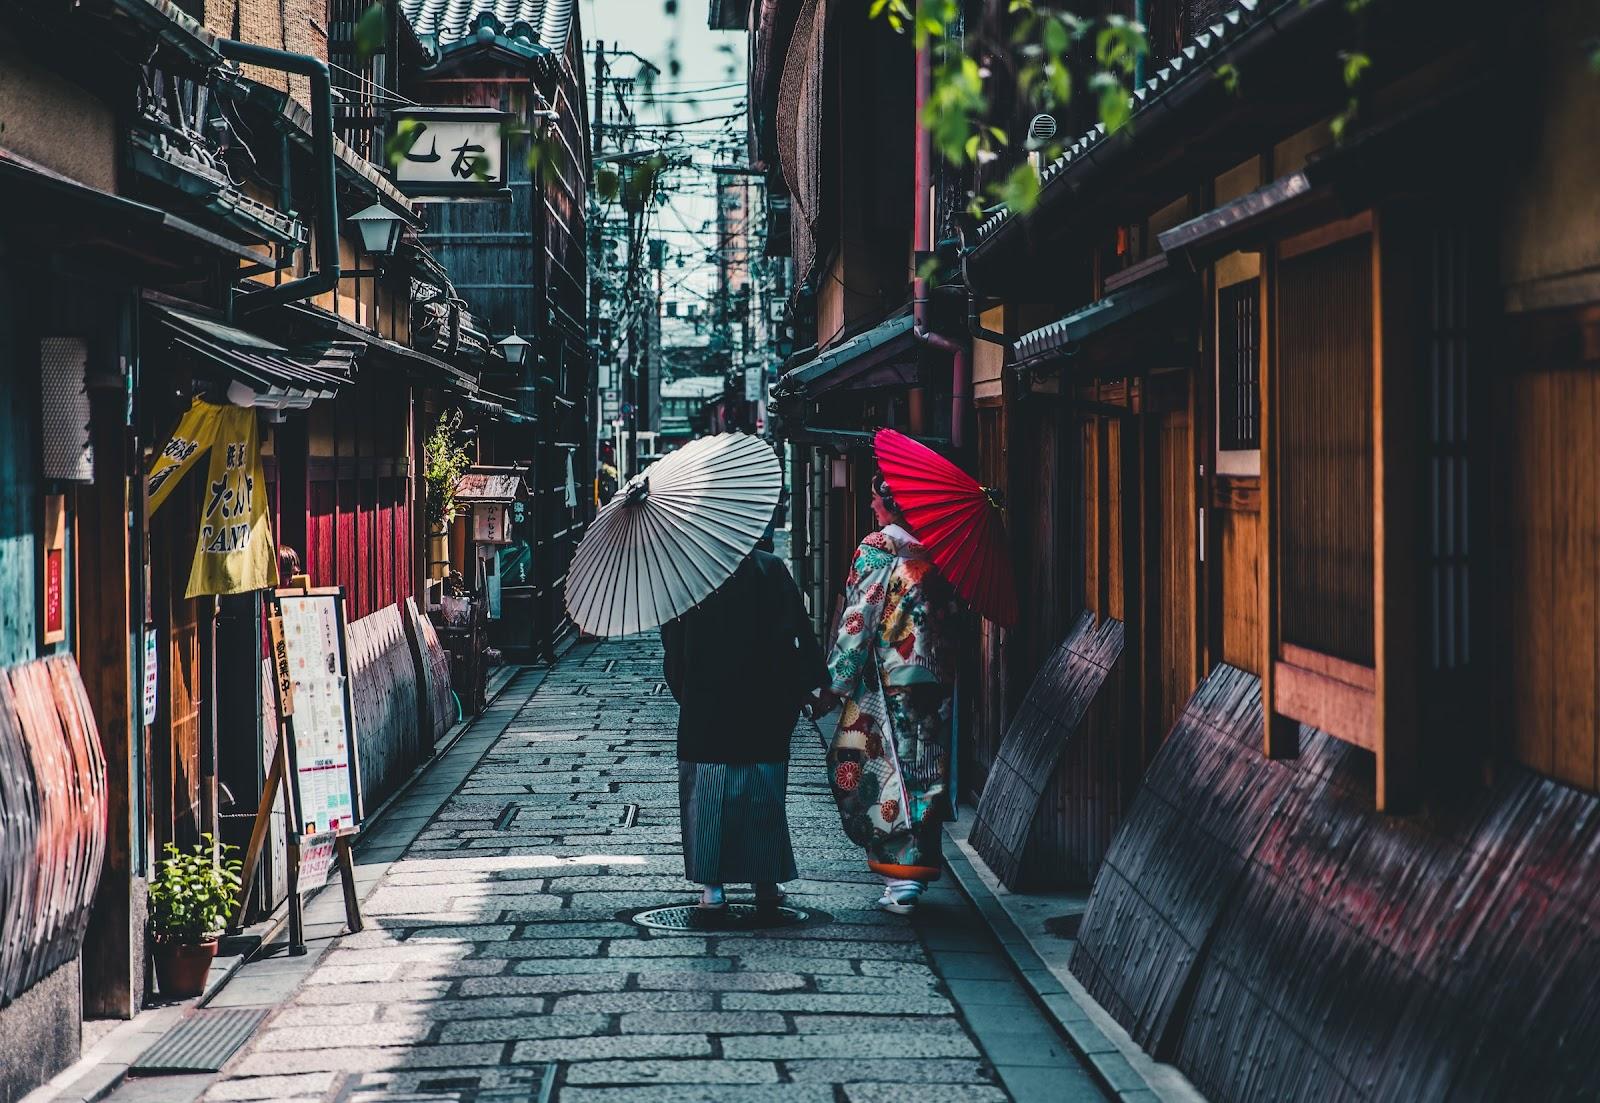 An enchant street in Japan.